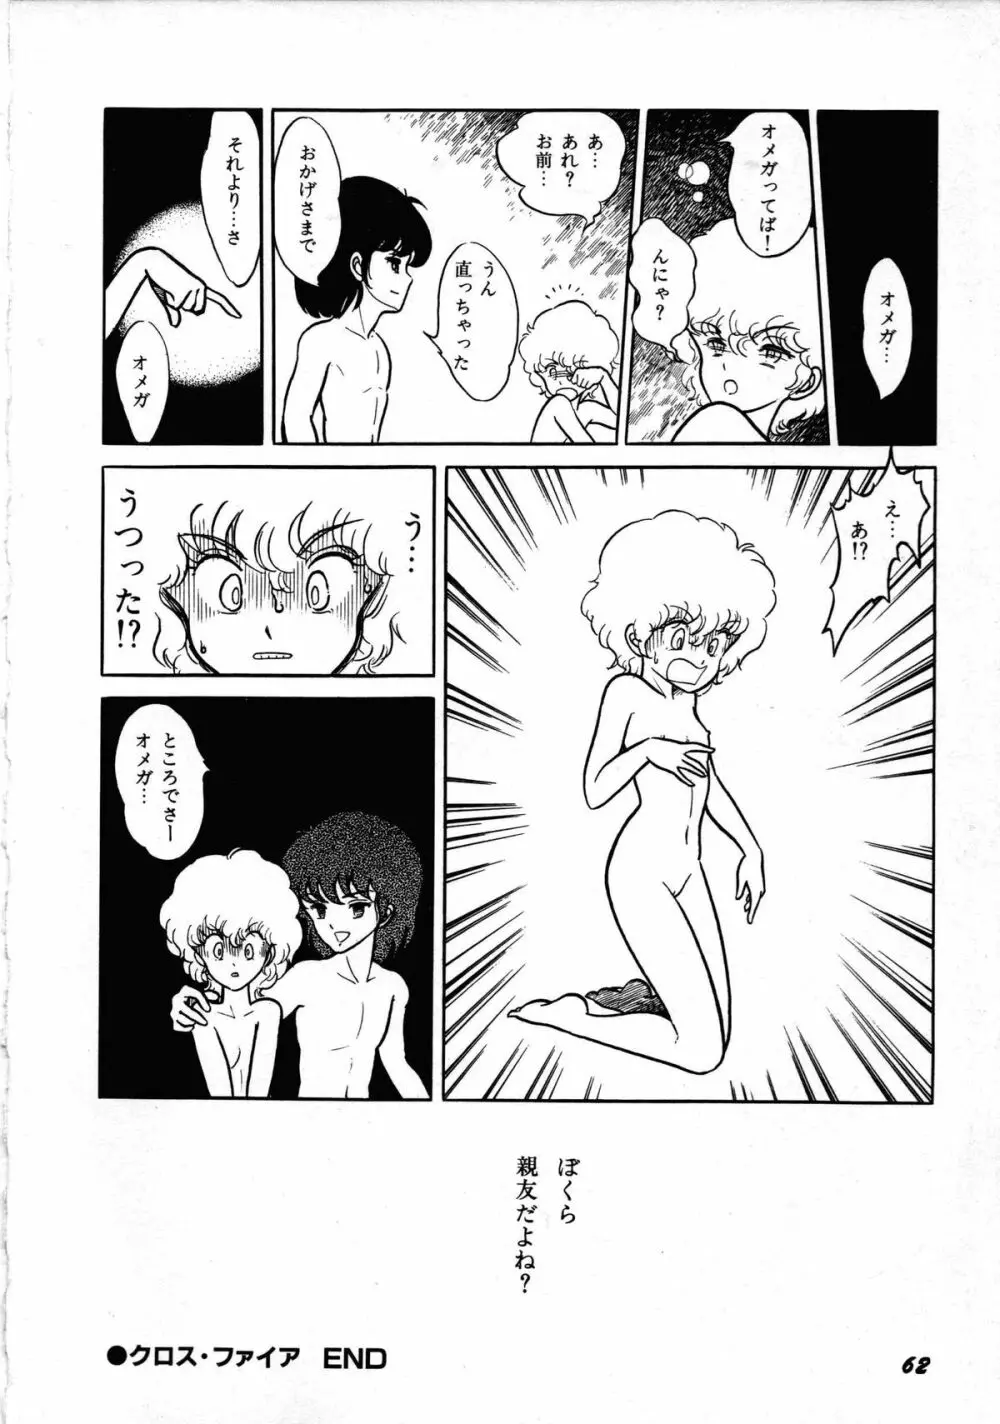 ロボット&美少女傑作選 レモン・ピープル1982-1986 66ページ